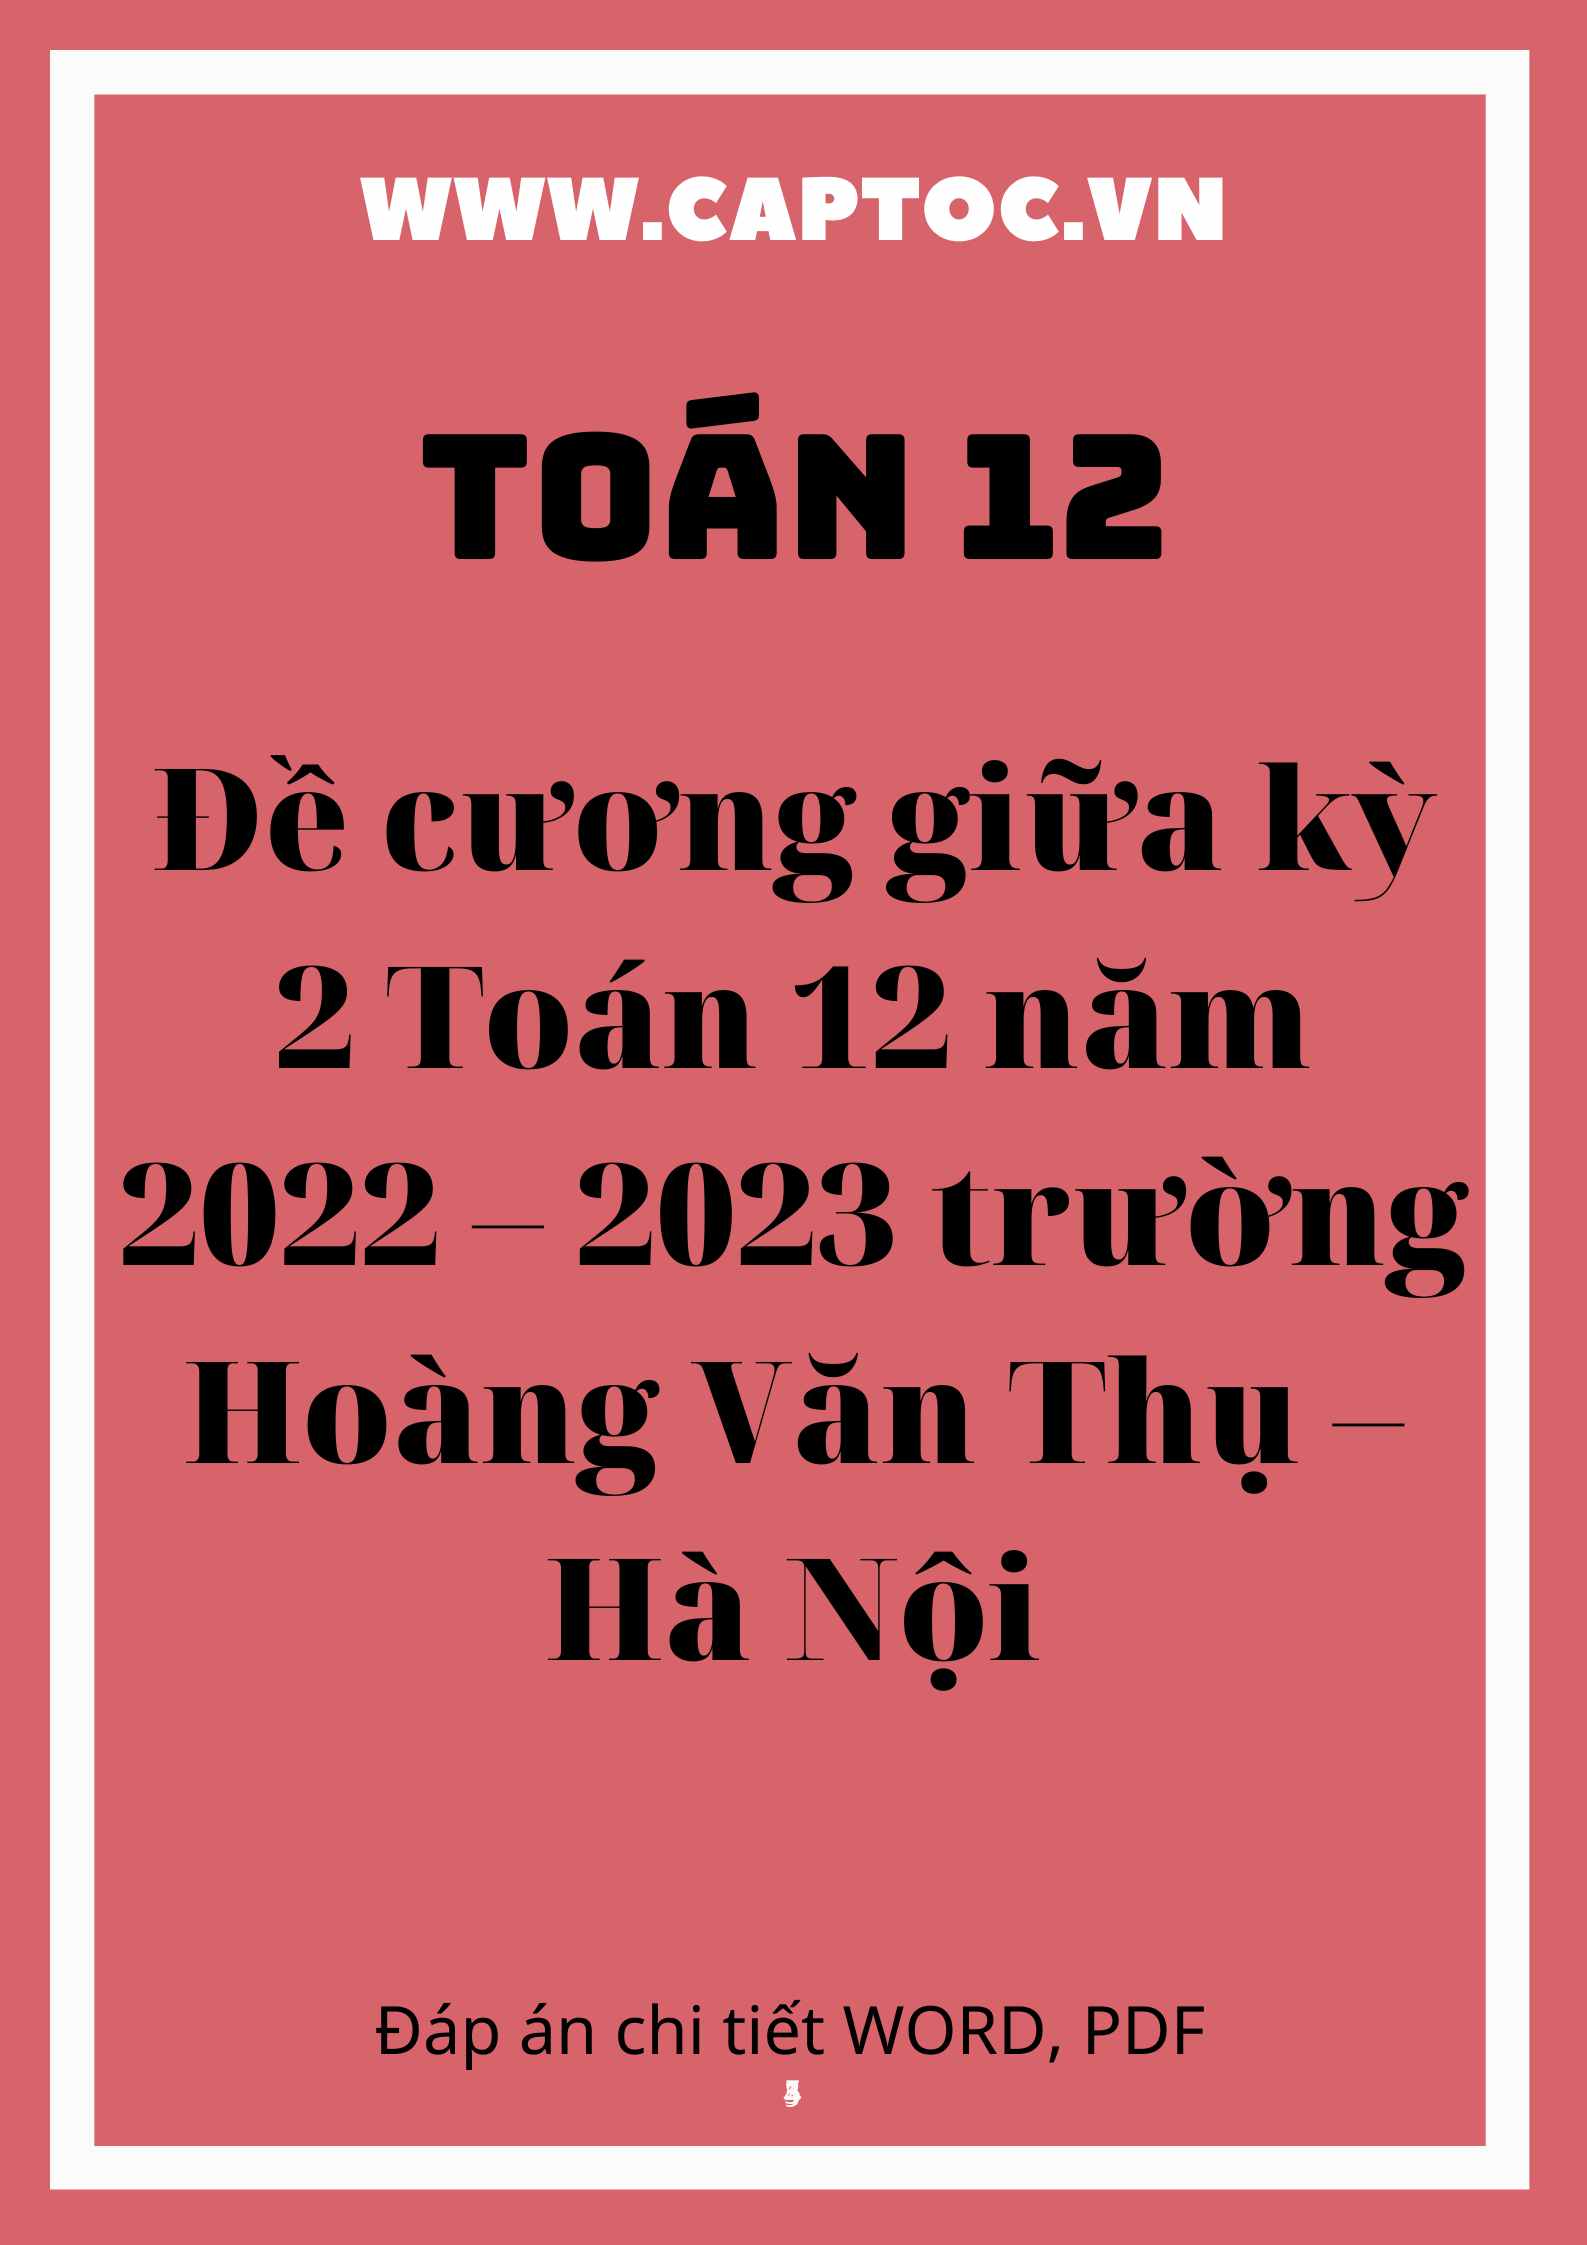 Đề cương giữa kỳ 2 Toán 12 năm 2022 – 2023 trường Hoàng Văn Thụ – Hà Nội